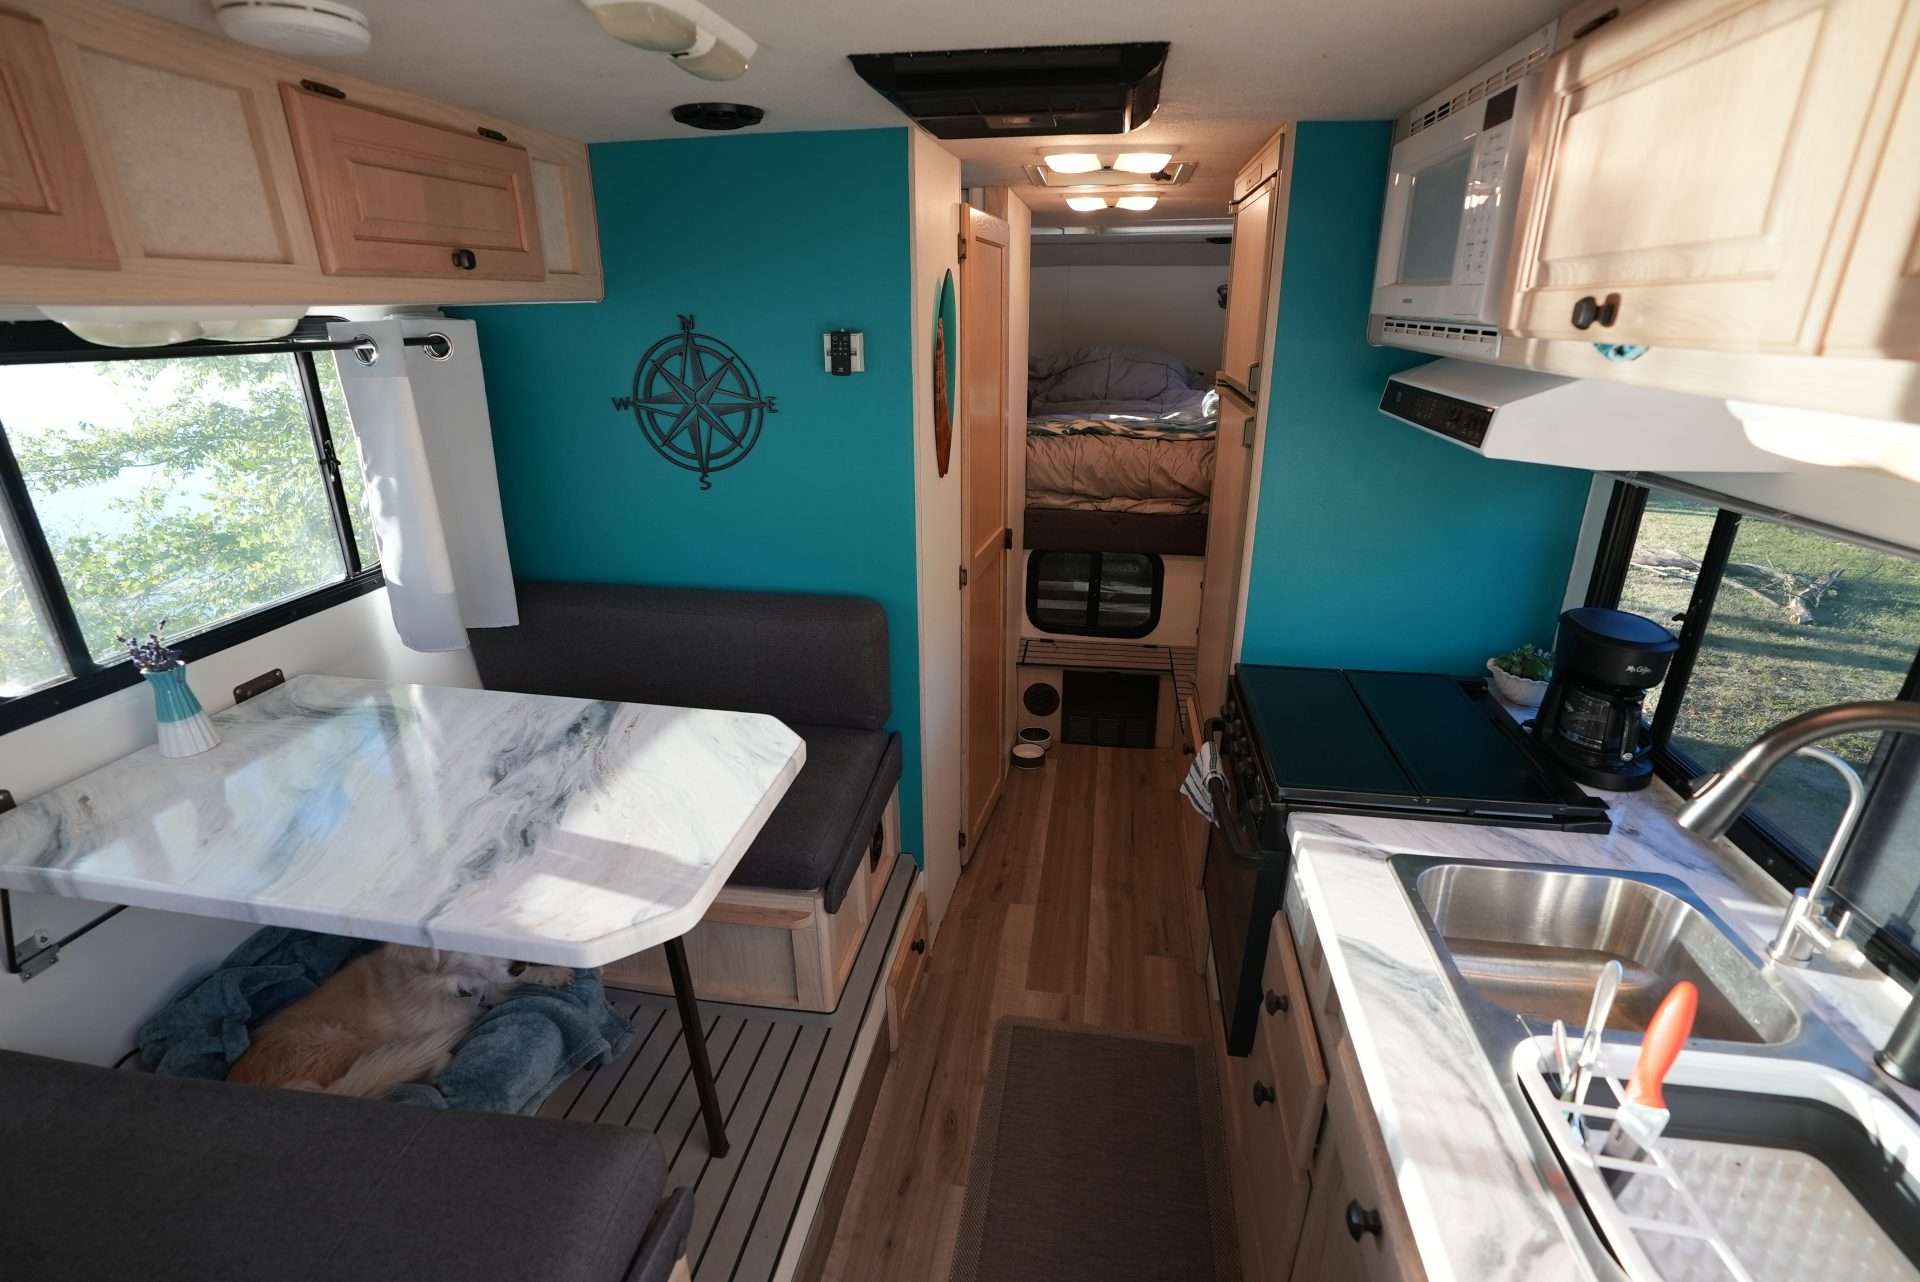 Morton's renovated truck camper interior